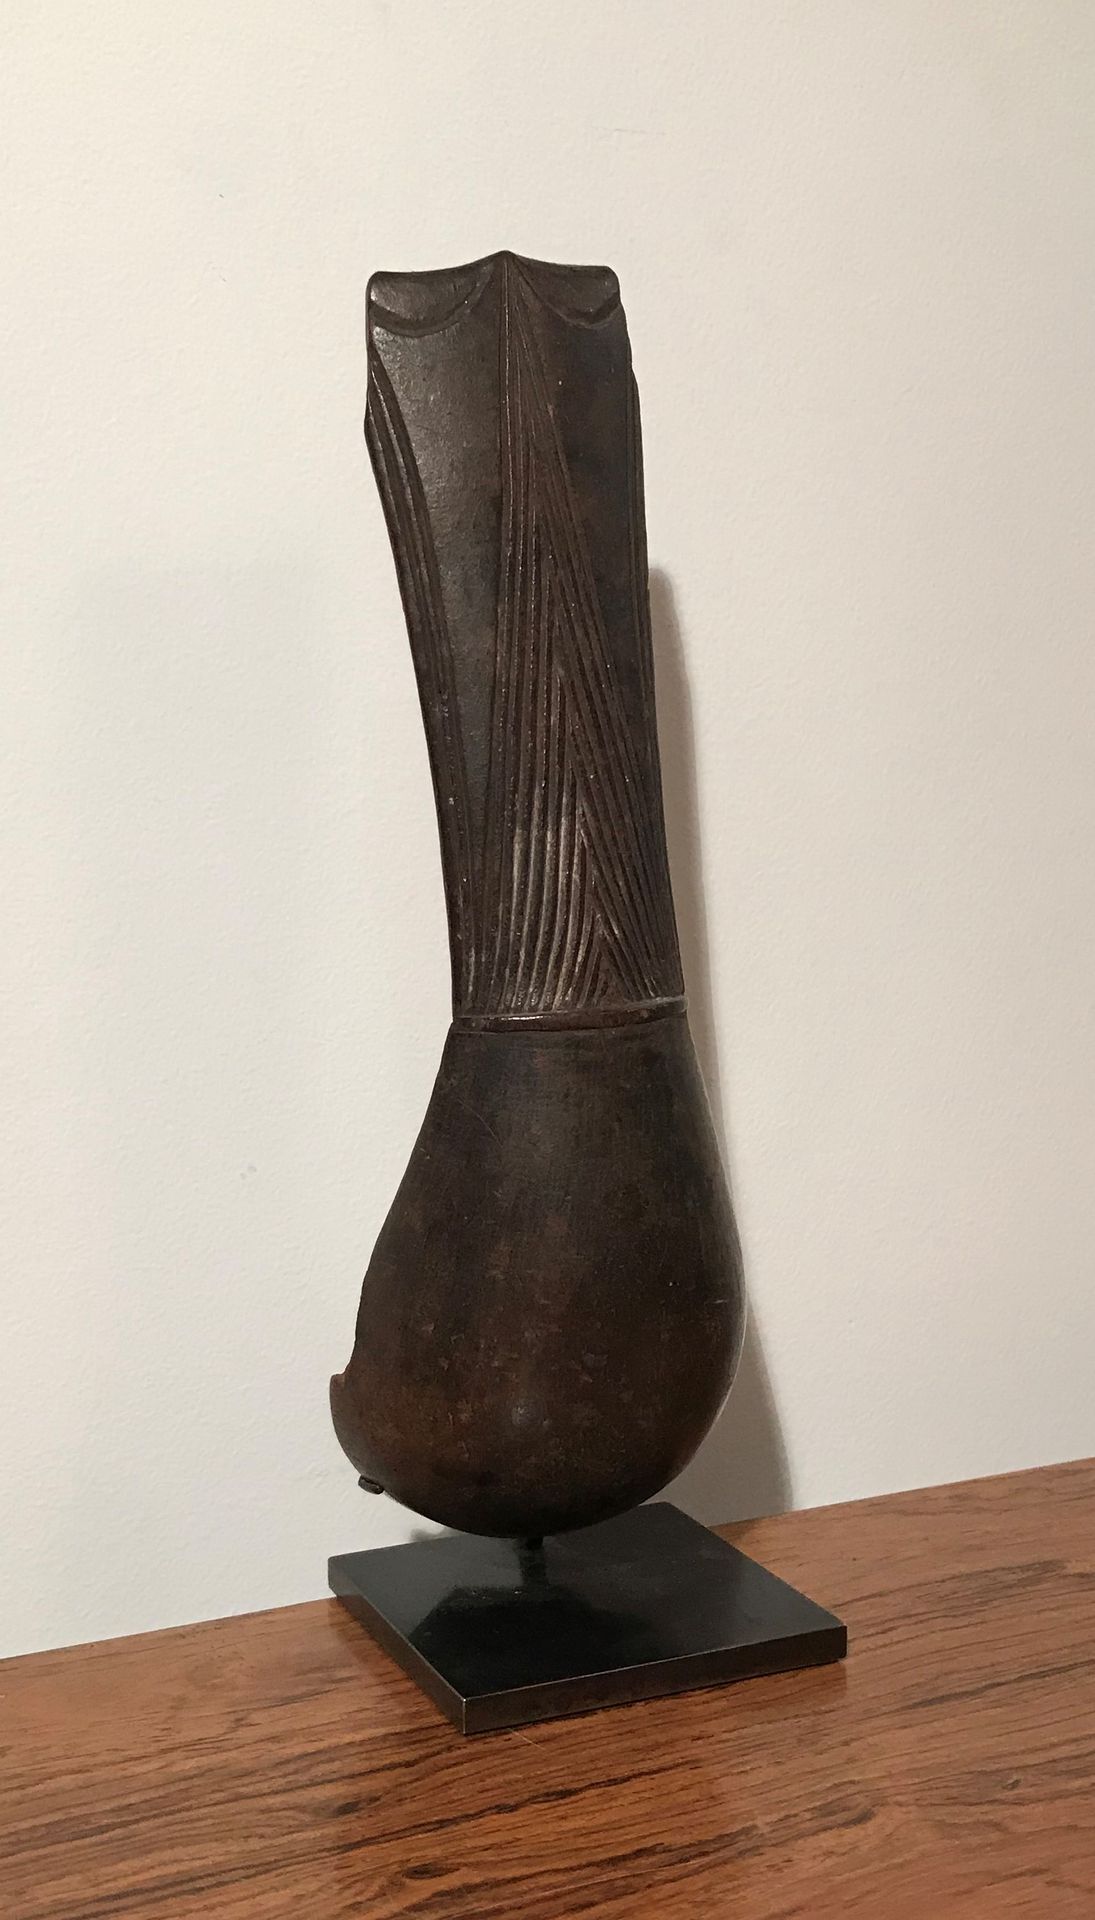 Null Cuillère en bois (manques). Peuple Fang. Gabon. 
H. : 19 cm.